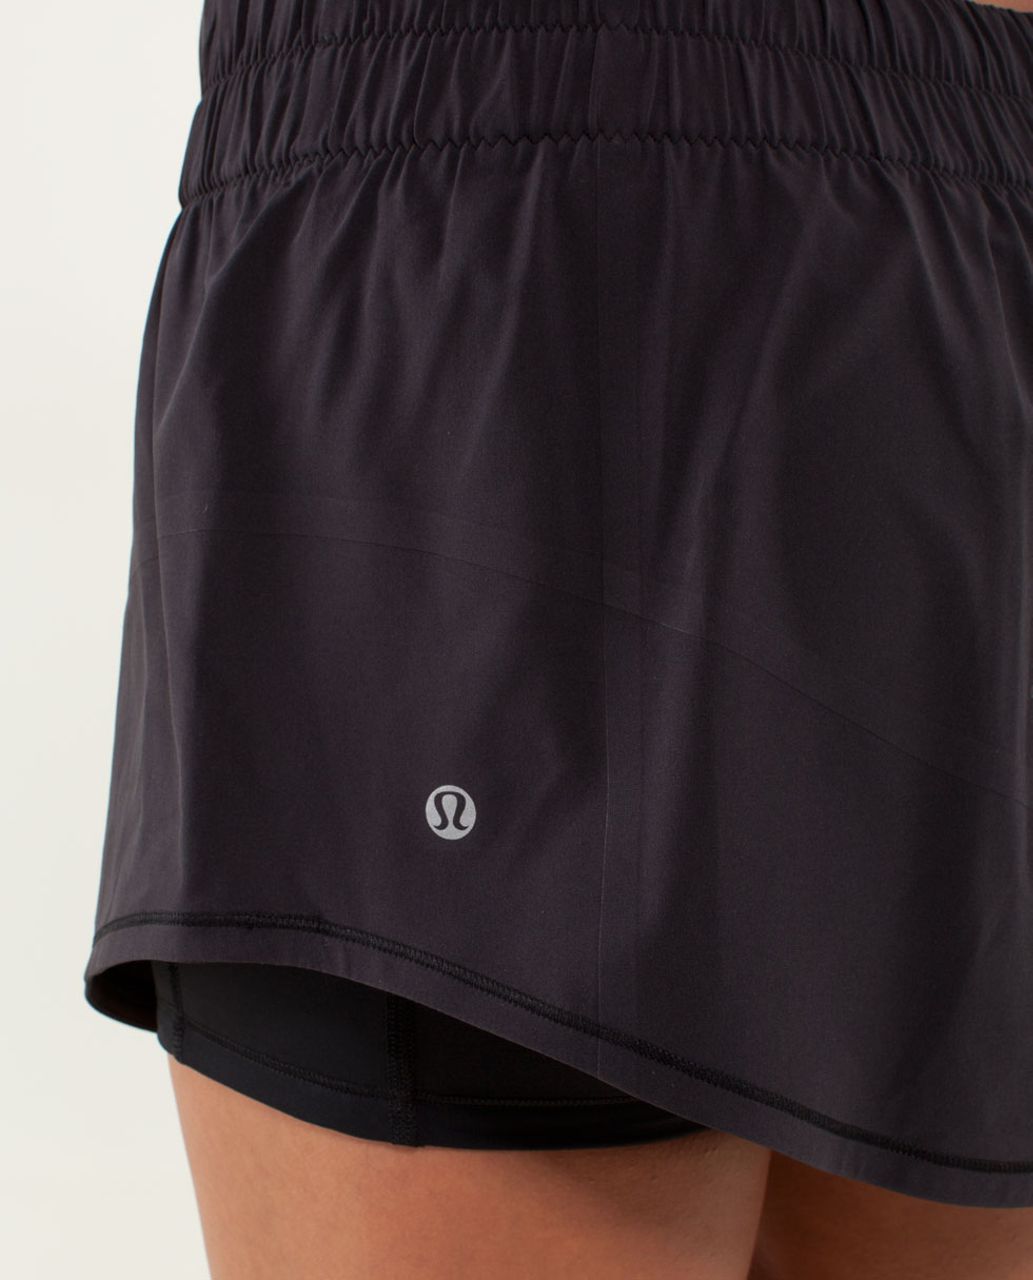 NWT Skirt Sports Lotta Breeze Capri Skort Black $109 Size Large Thigh  Pockets ❤️